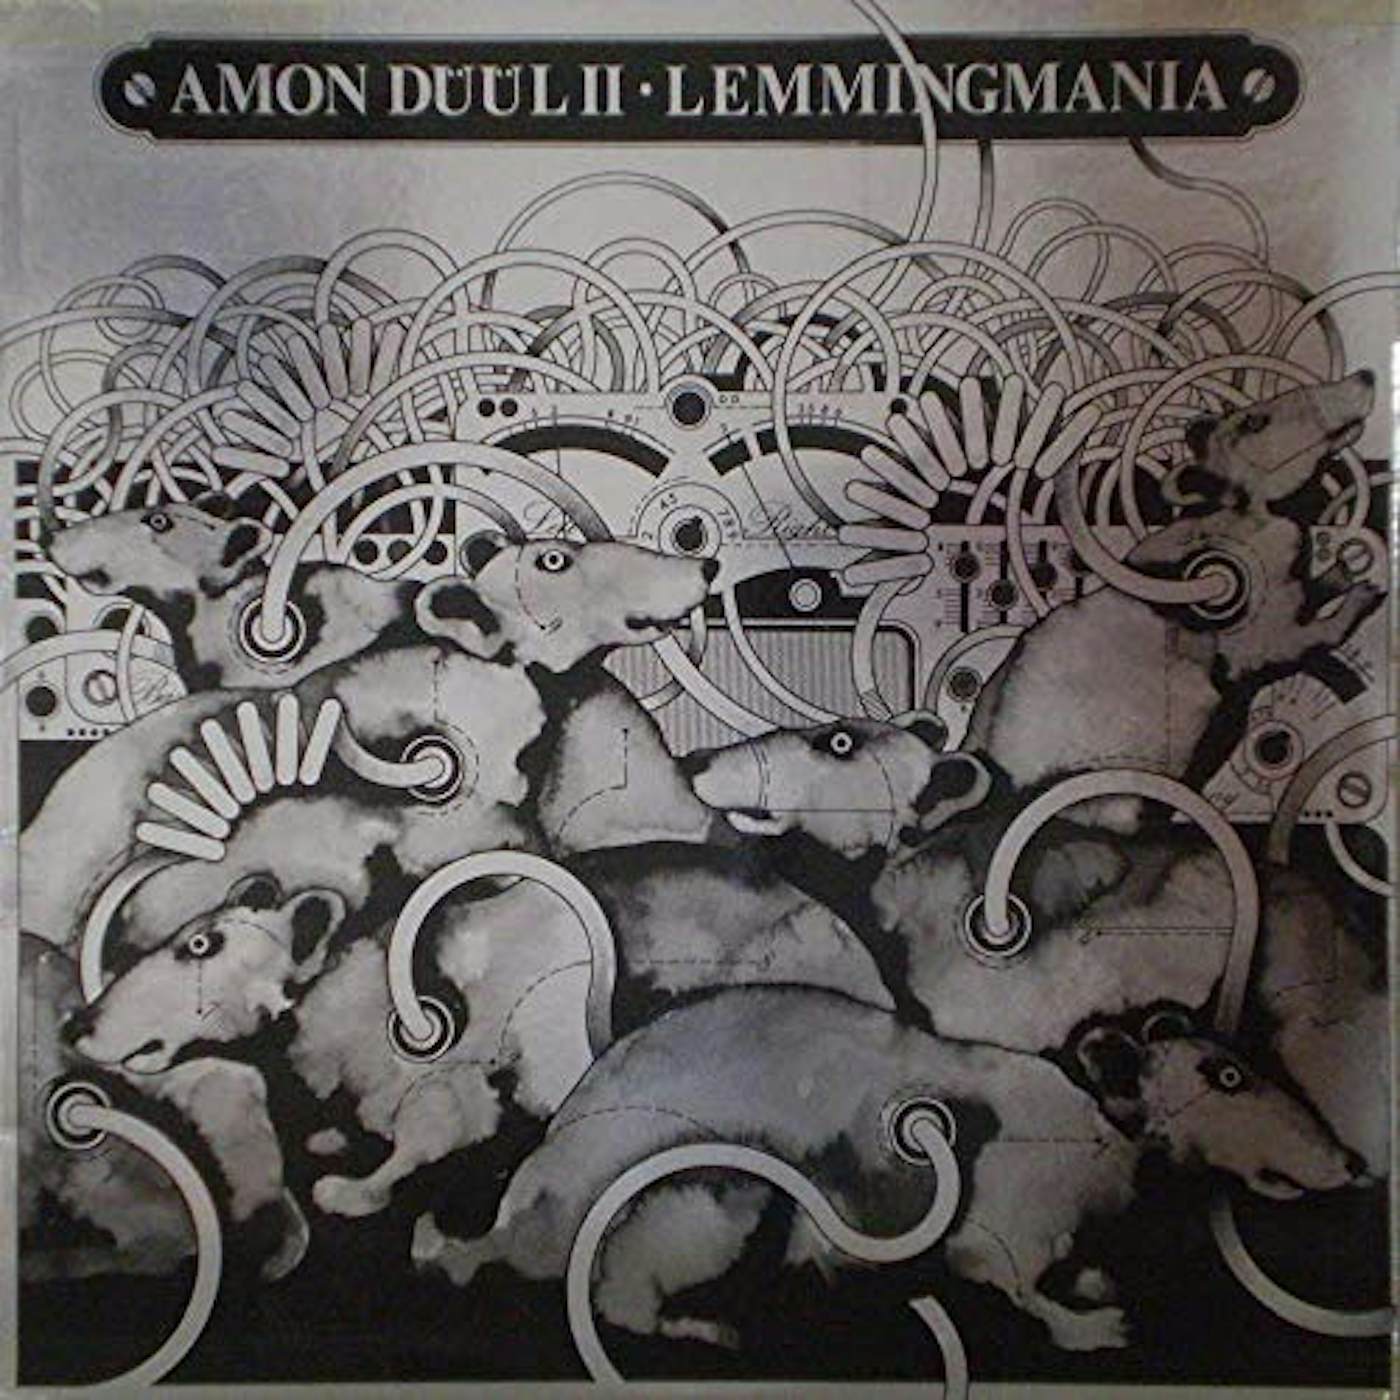 Amon Düül II Lemmingmania Vinyl Record